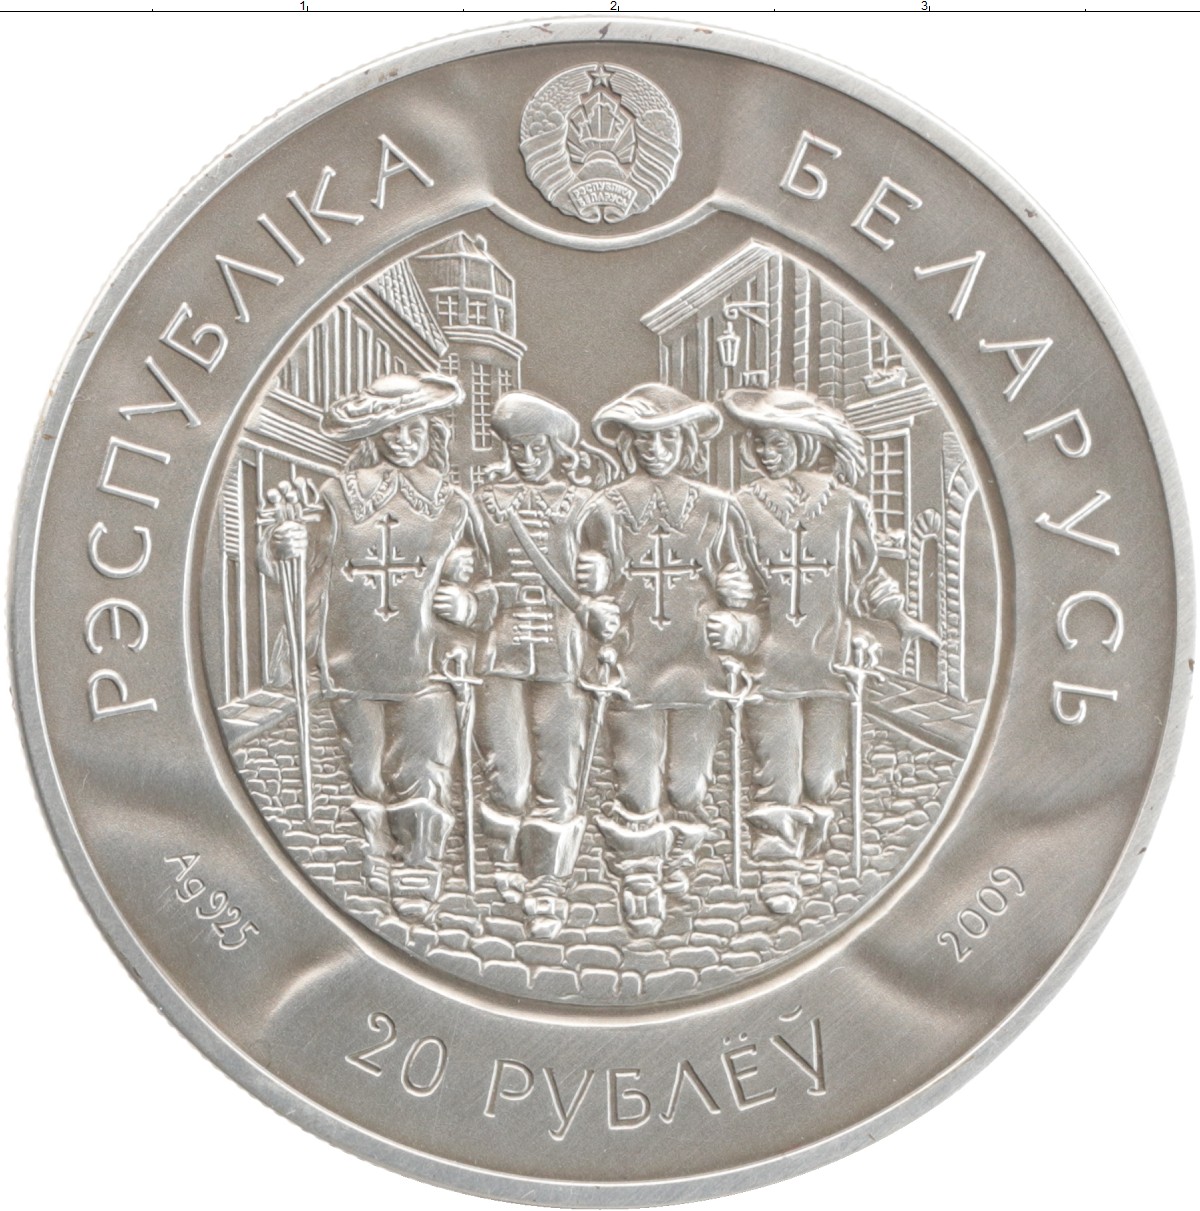 Памятные монеты беларуси. Три мушкетера набор монет. Три мушкетера монета. Белорусские серебряные монеты. Памятные монеты РБ.